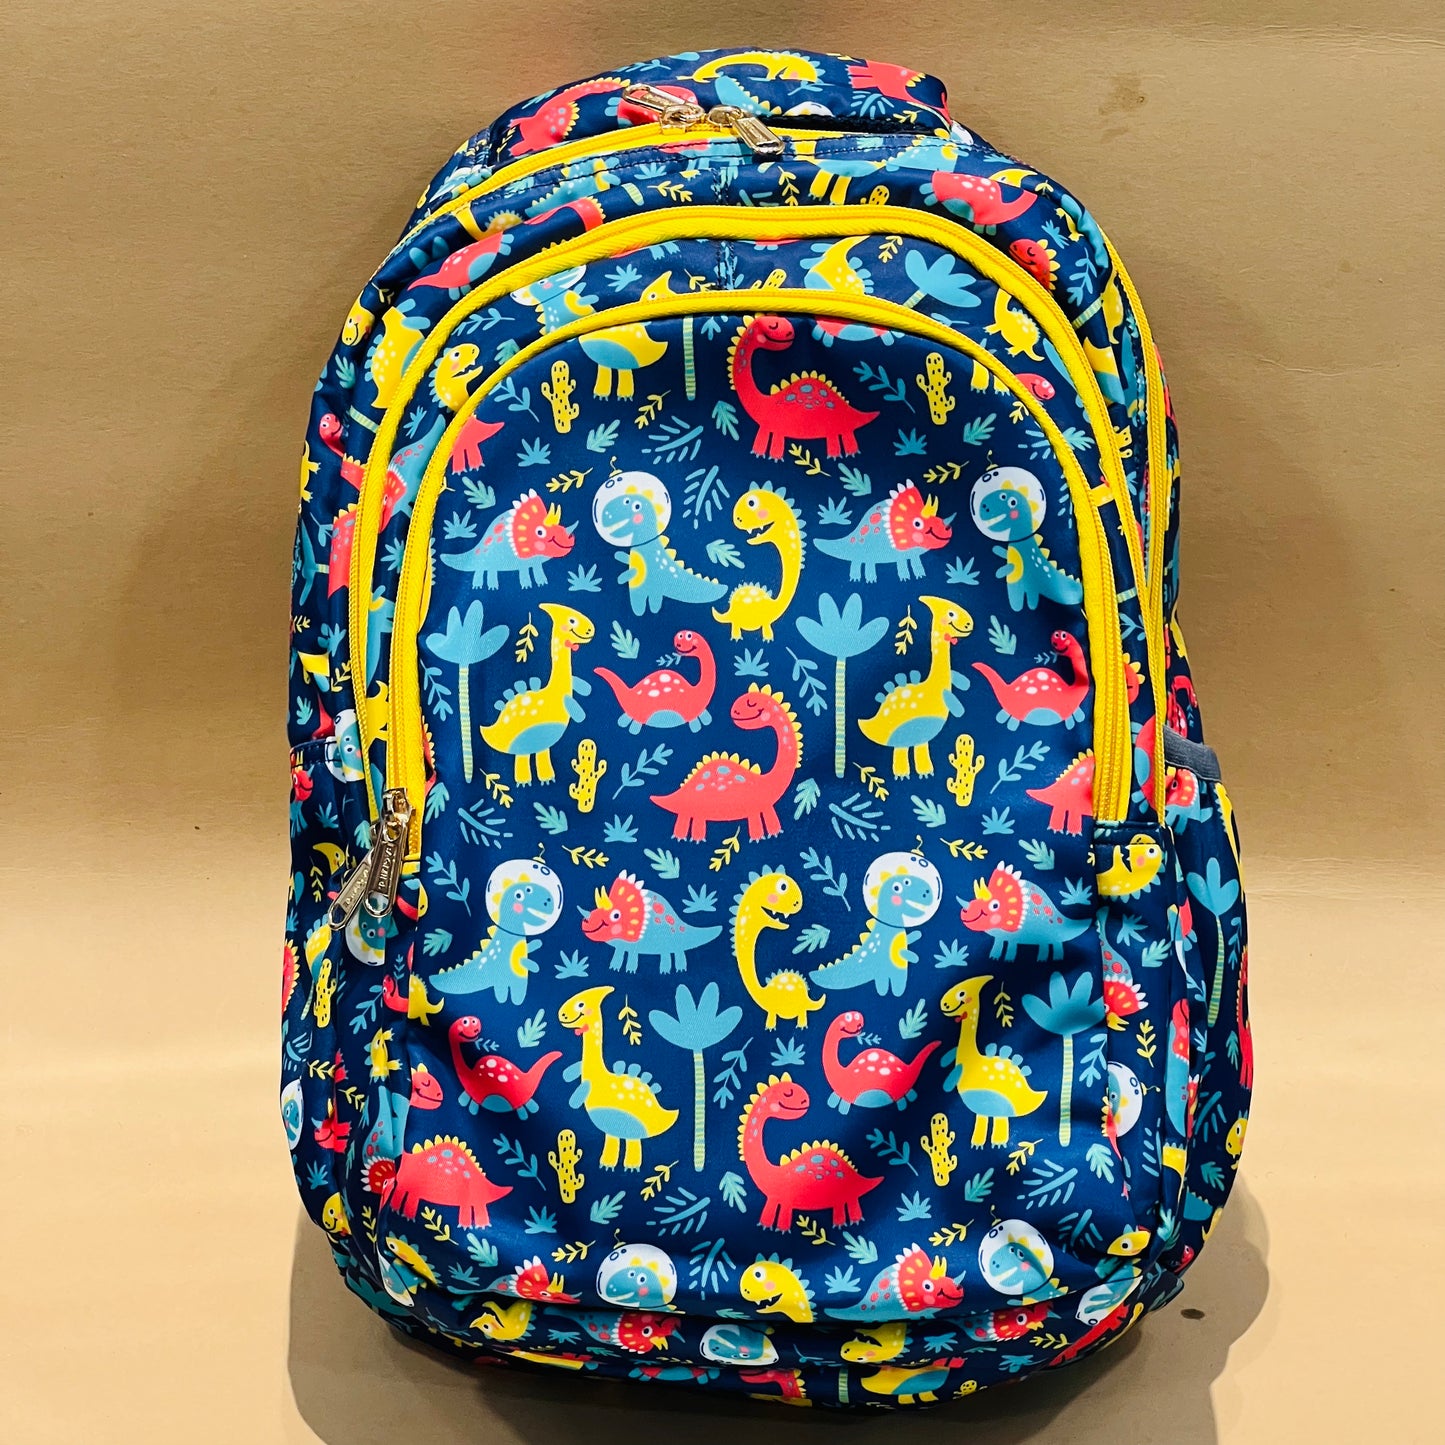 14” Premium School Bags